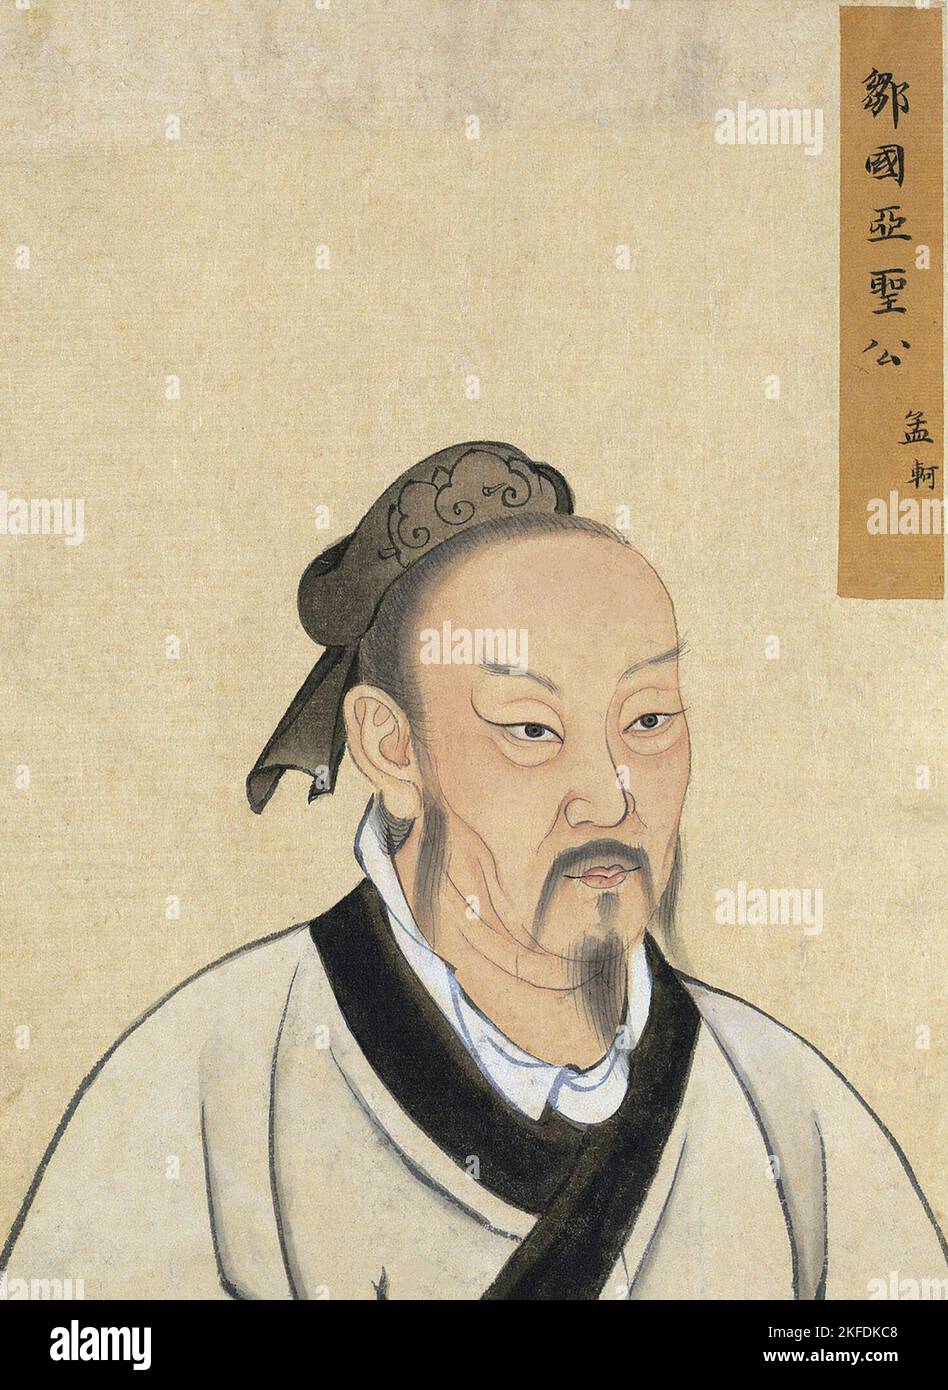 Chine : Mencius (c. 372 – 289 BCE) était un philosophe et disciple chinois de Confucius. Yuan Dynasty (1279 - 1368) encre sur papier portrait. Mencius, également connu sous son nom de naissance Meng Ke ou Ko, est né dans l'État de Zou, formant maintenant le territoire de la ville de comté de Zoucheng; à l'origine Zouxian, province de Shandong, à seulement 30 km au sud de Qufu, lieu de naissance de Confucius. Il était un philosophe et sage chinois itinérant et l'un des principaux interprètes du confucianisme. Soi-disant, il était un élève du petit-fils de Confucius, Zisi. Banque D'Images